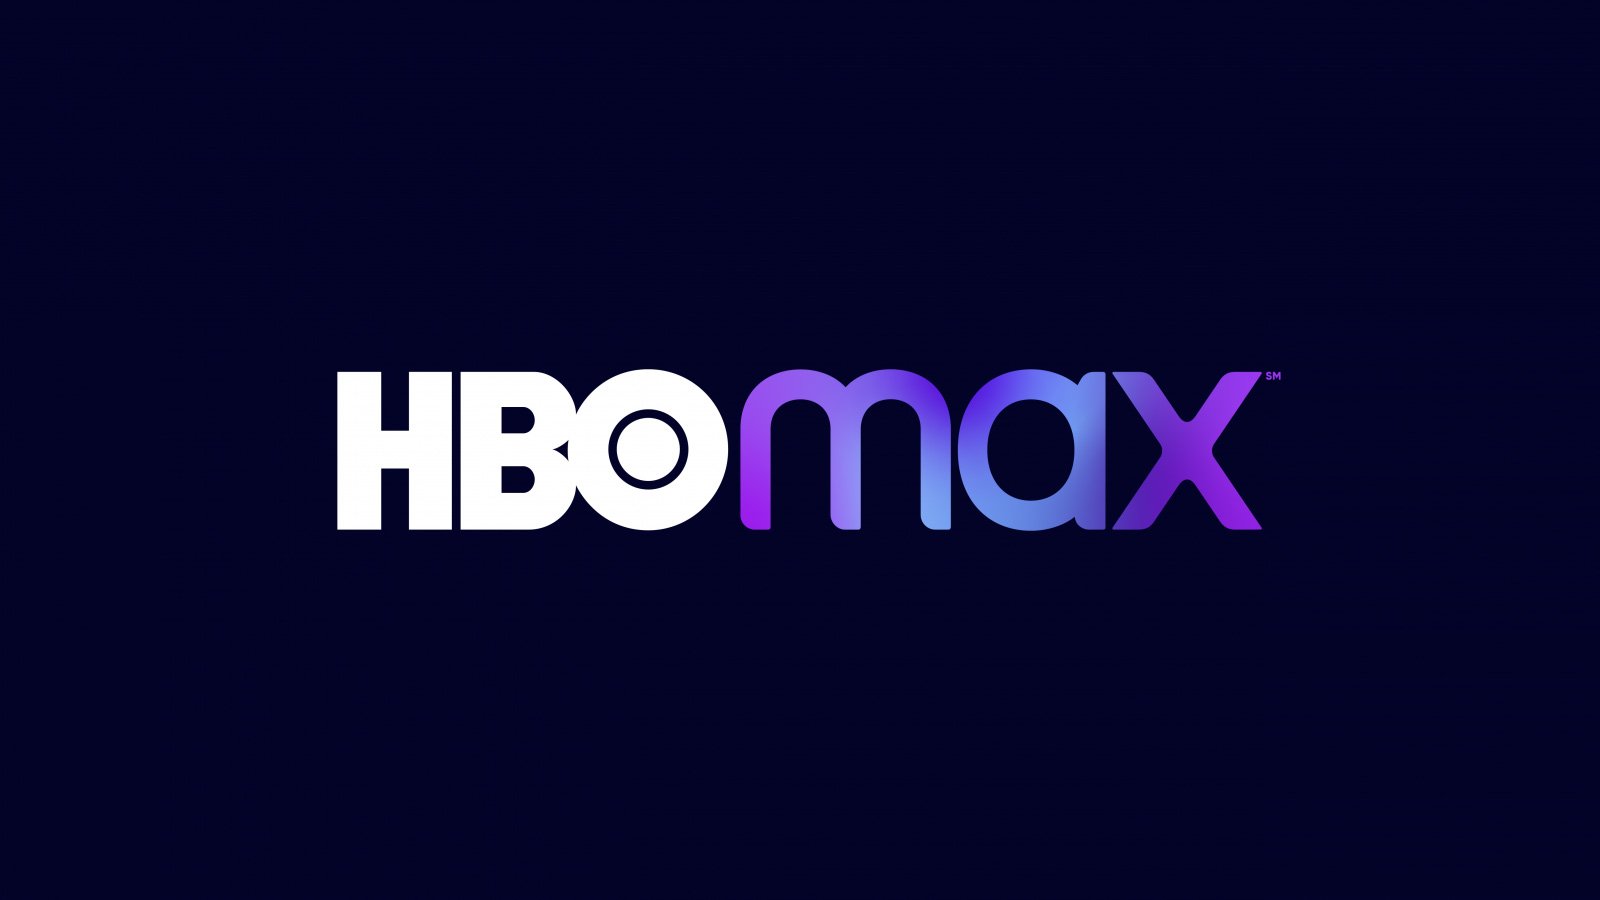 HBO Max Brasil on X: Daqui uma semana, só falem comigo se for pra